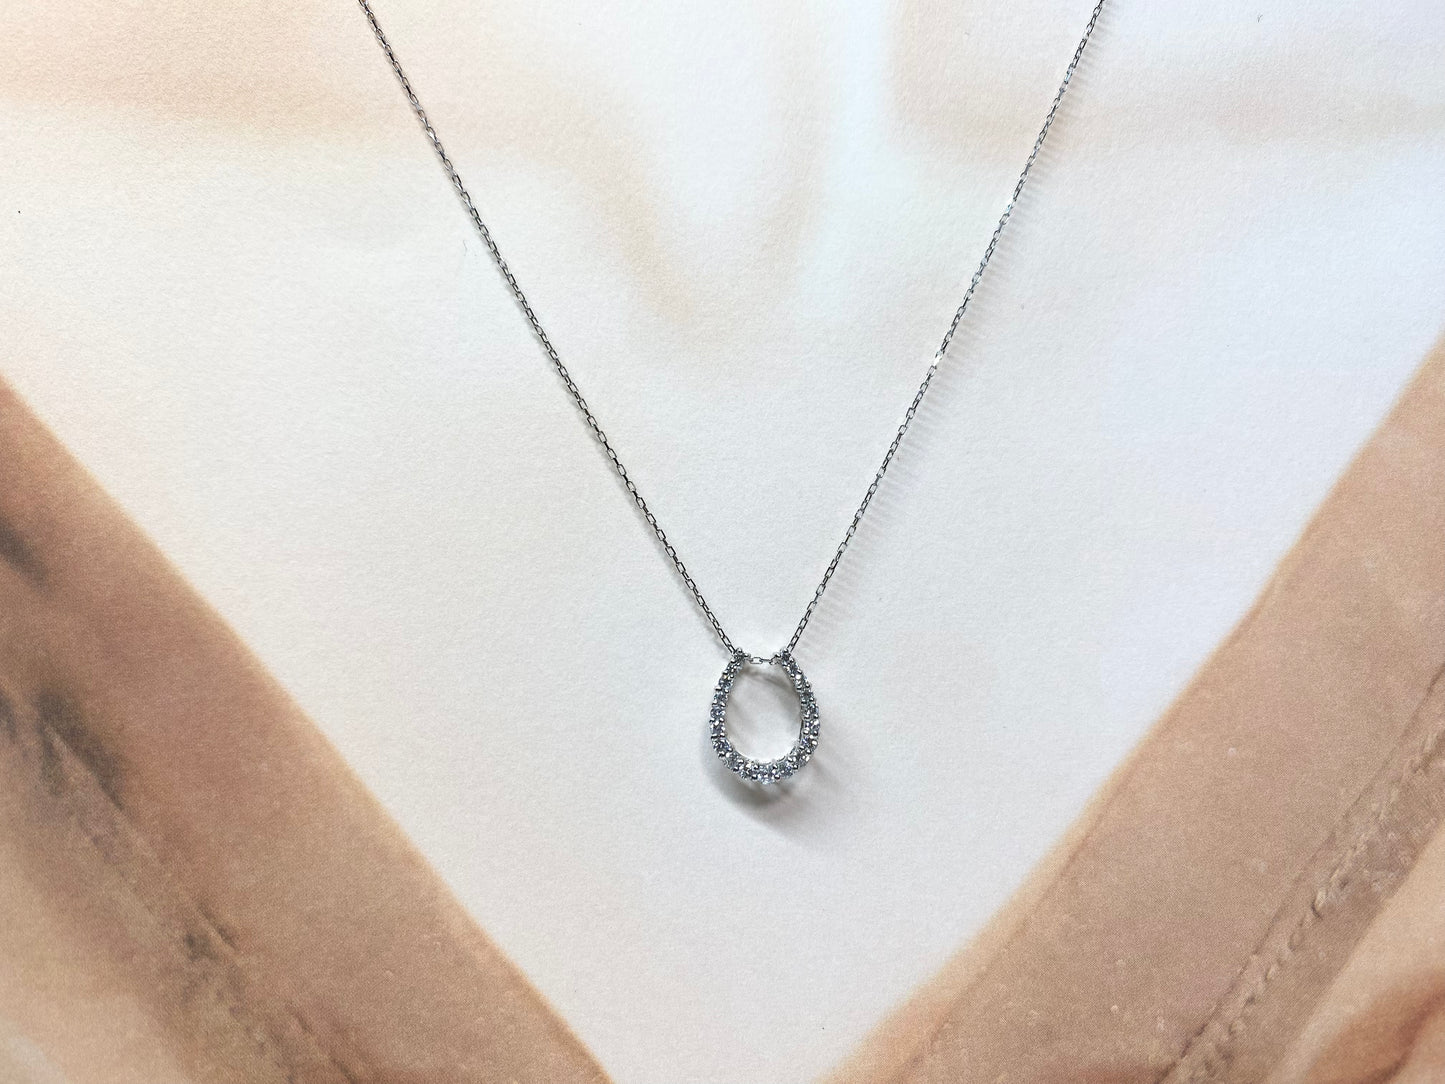 New] Diamond Jewelry Necklace with Horseshoe Image